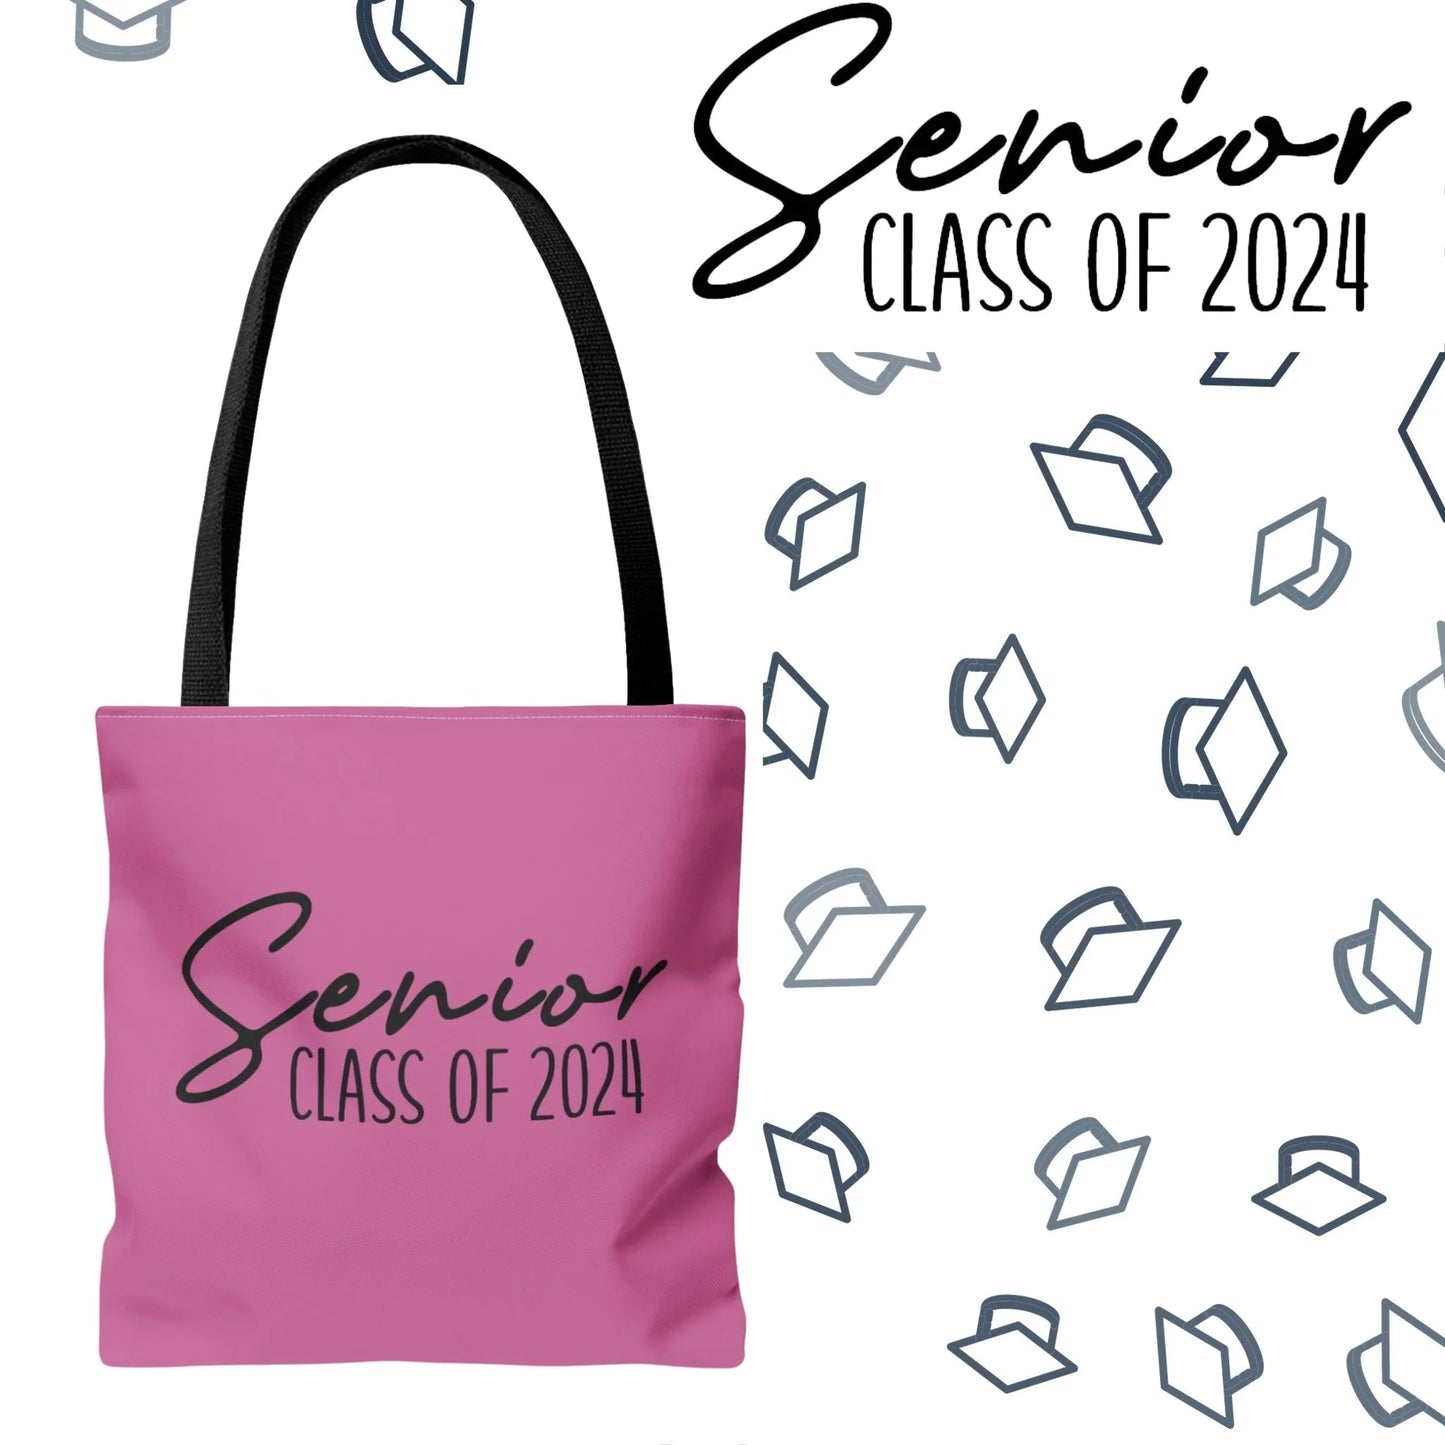 Senior Class of 2024 Tote Bag - Class of 2024 Tote Bag - Senior 2024 Tote Bag pink